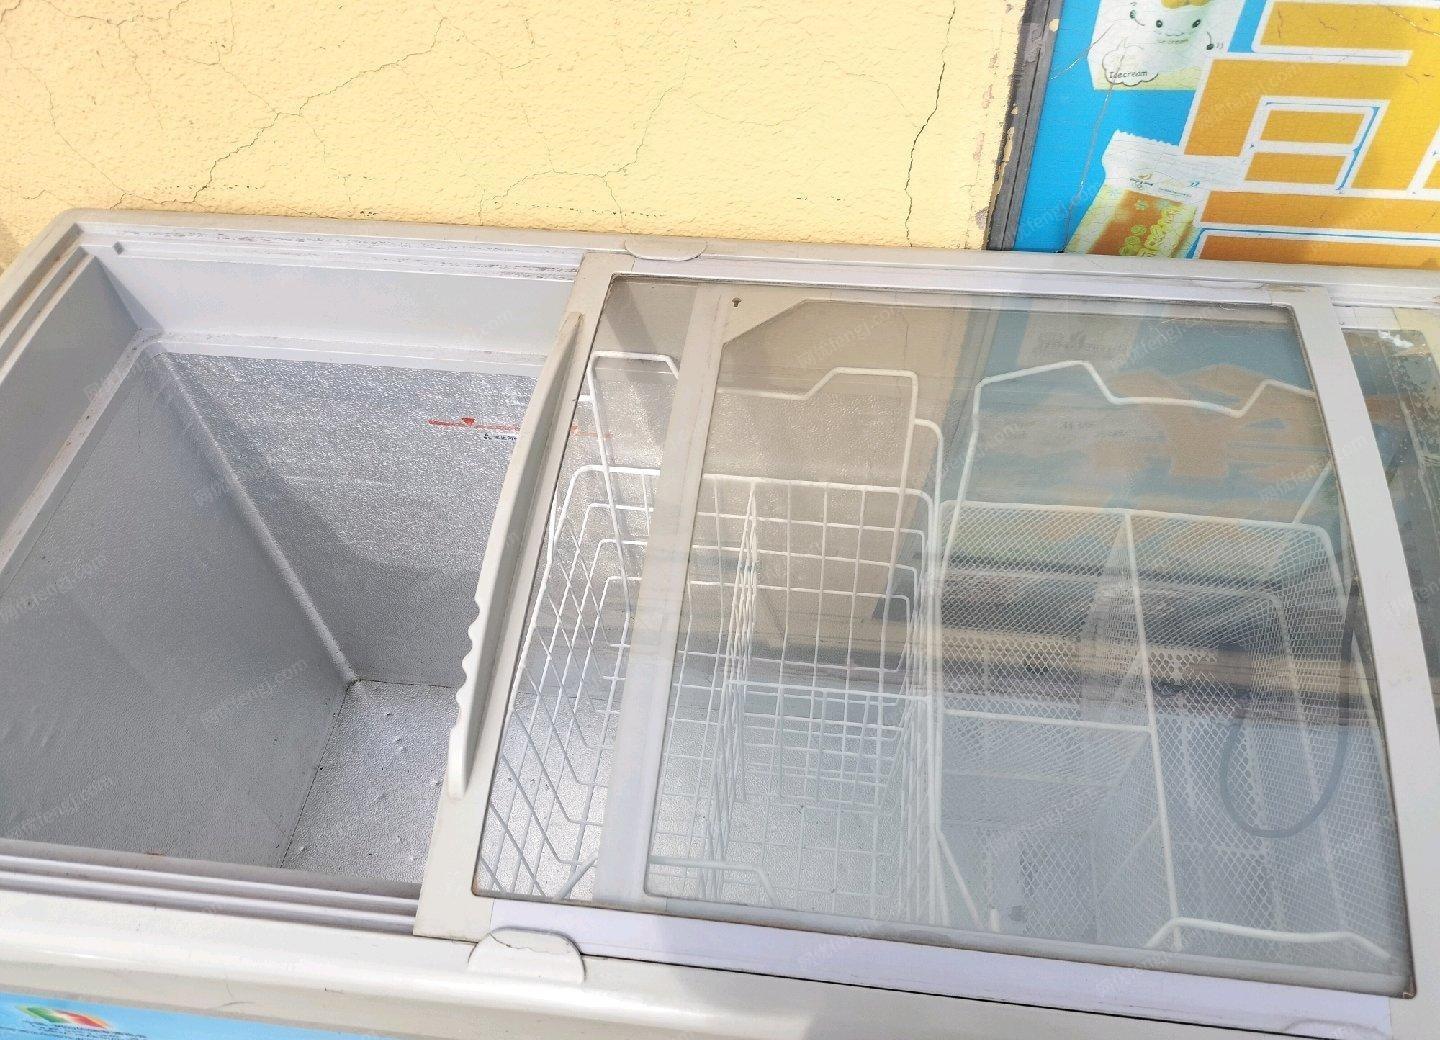 内蒙古呼和浩特超市不干了便宜处理二手冰柜